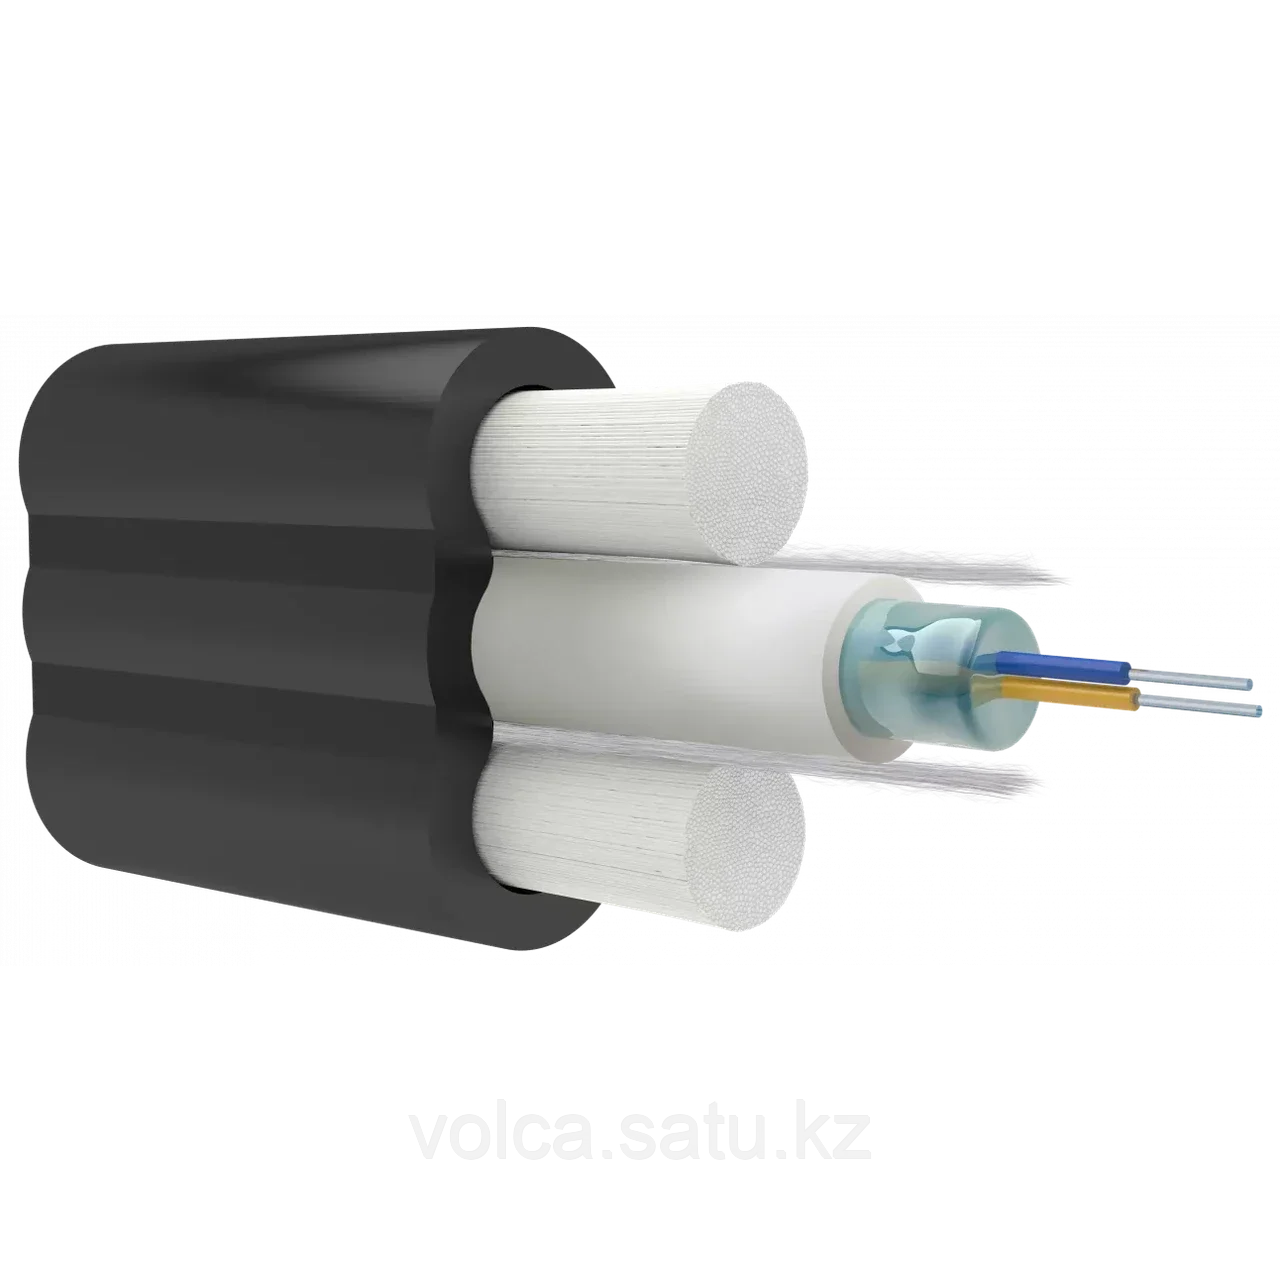 Абонентский оптический кабель Alpha Mile Микро Flat DROP, (диэлектрикий) одномодульный